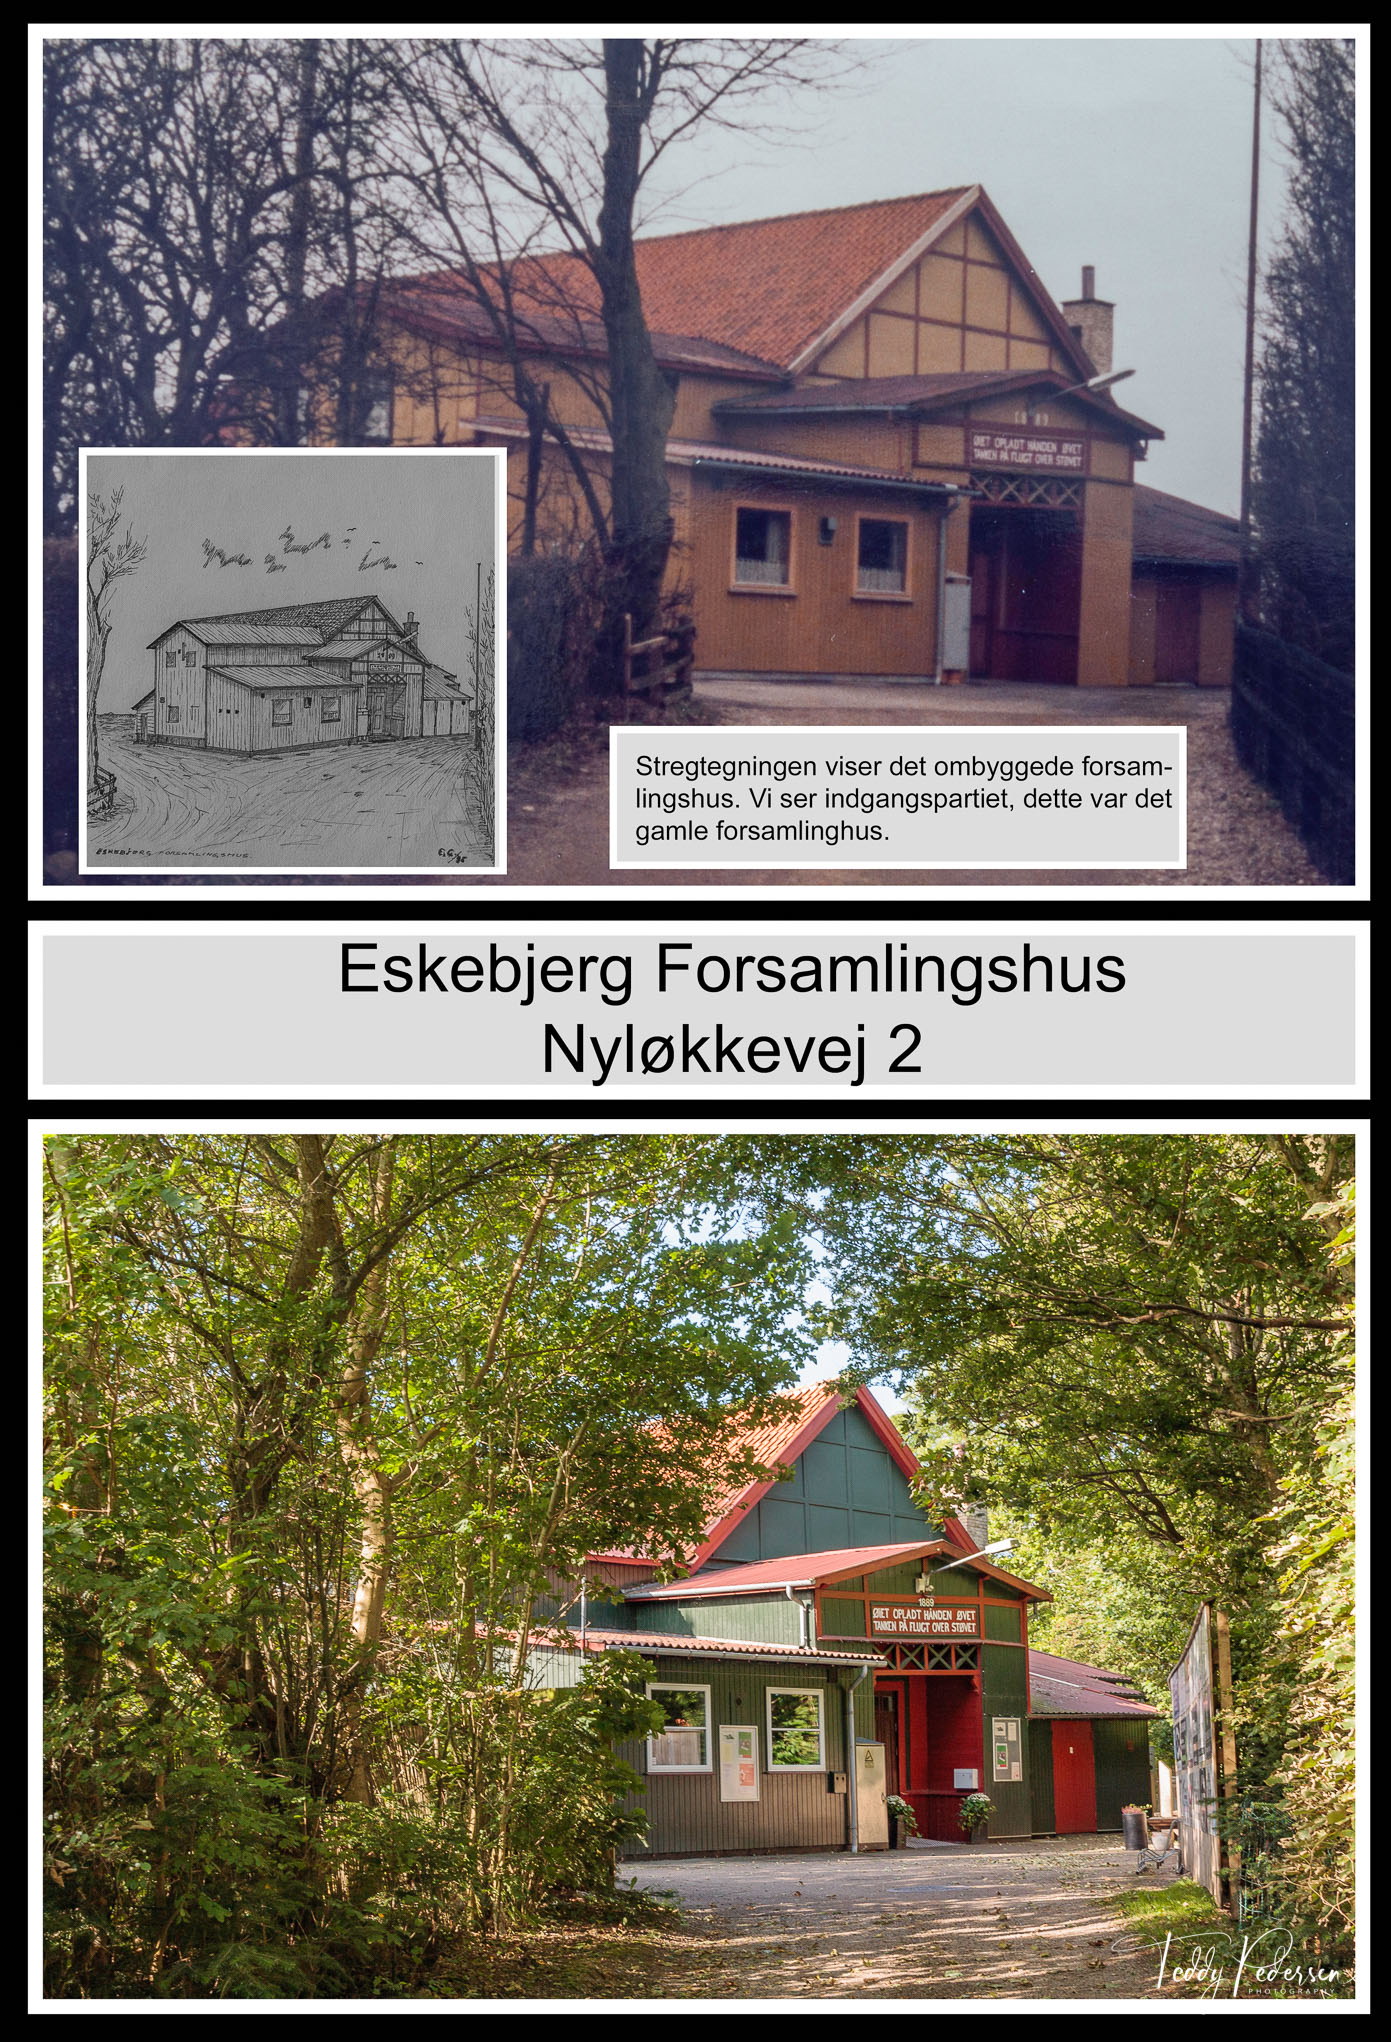 008-040-Eskebjerg-Forsamlingshus-Nyløkkevej-2_HighRes_LowRes